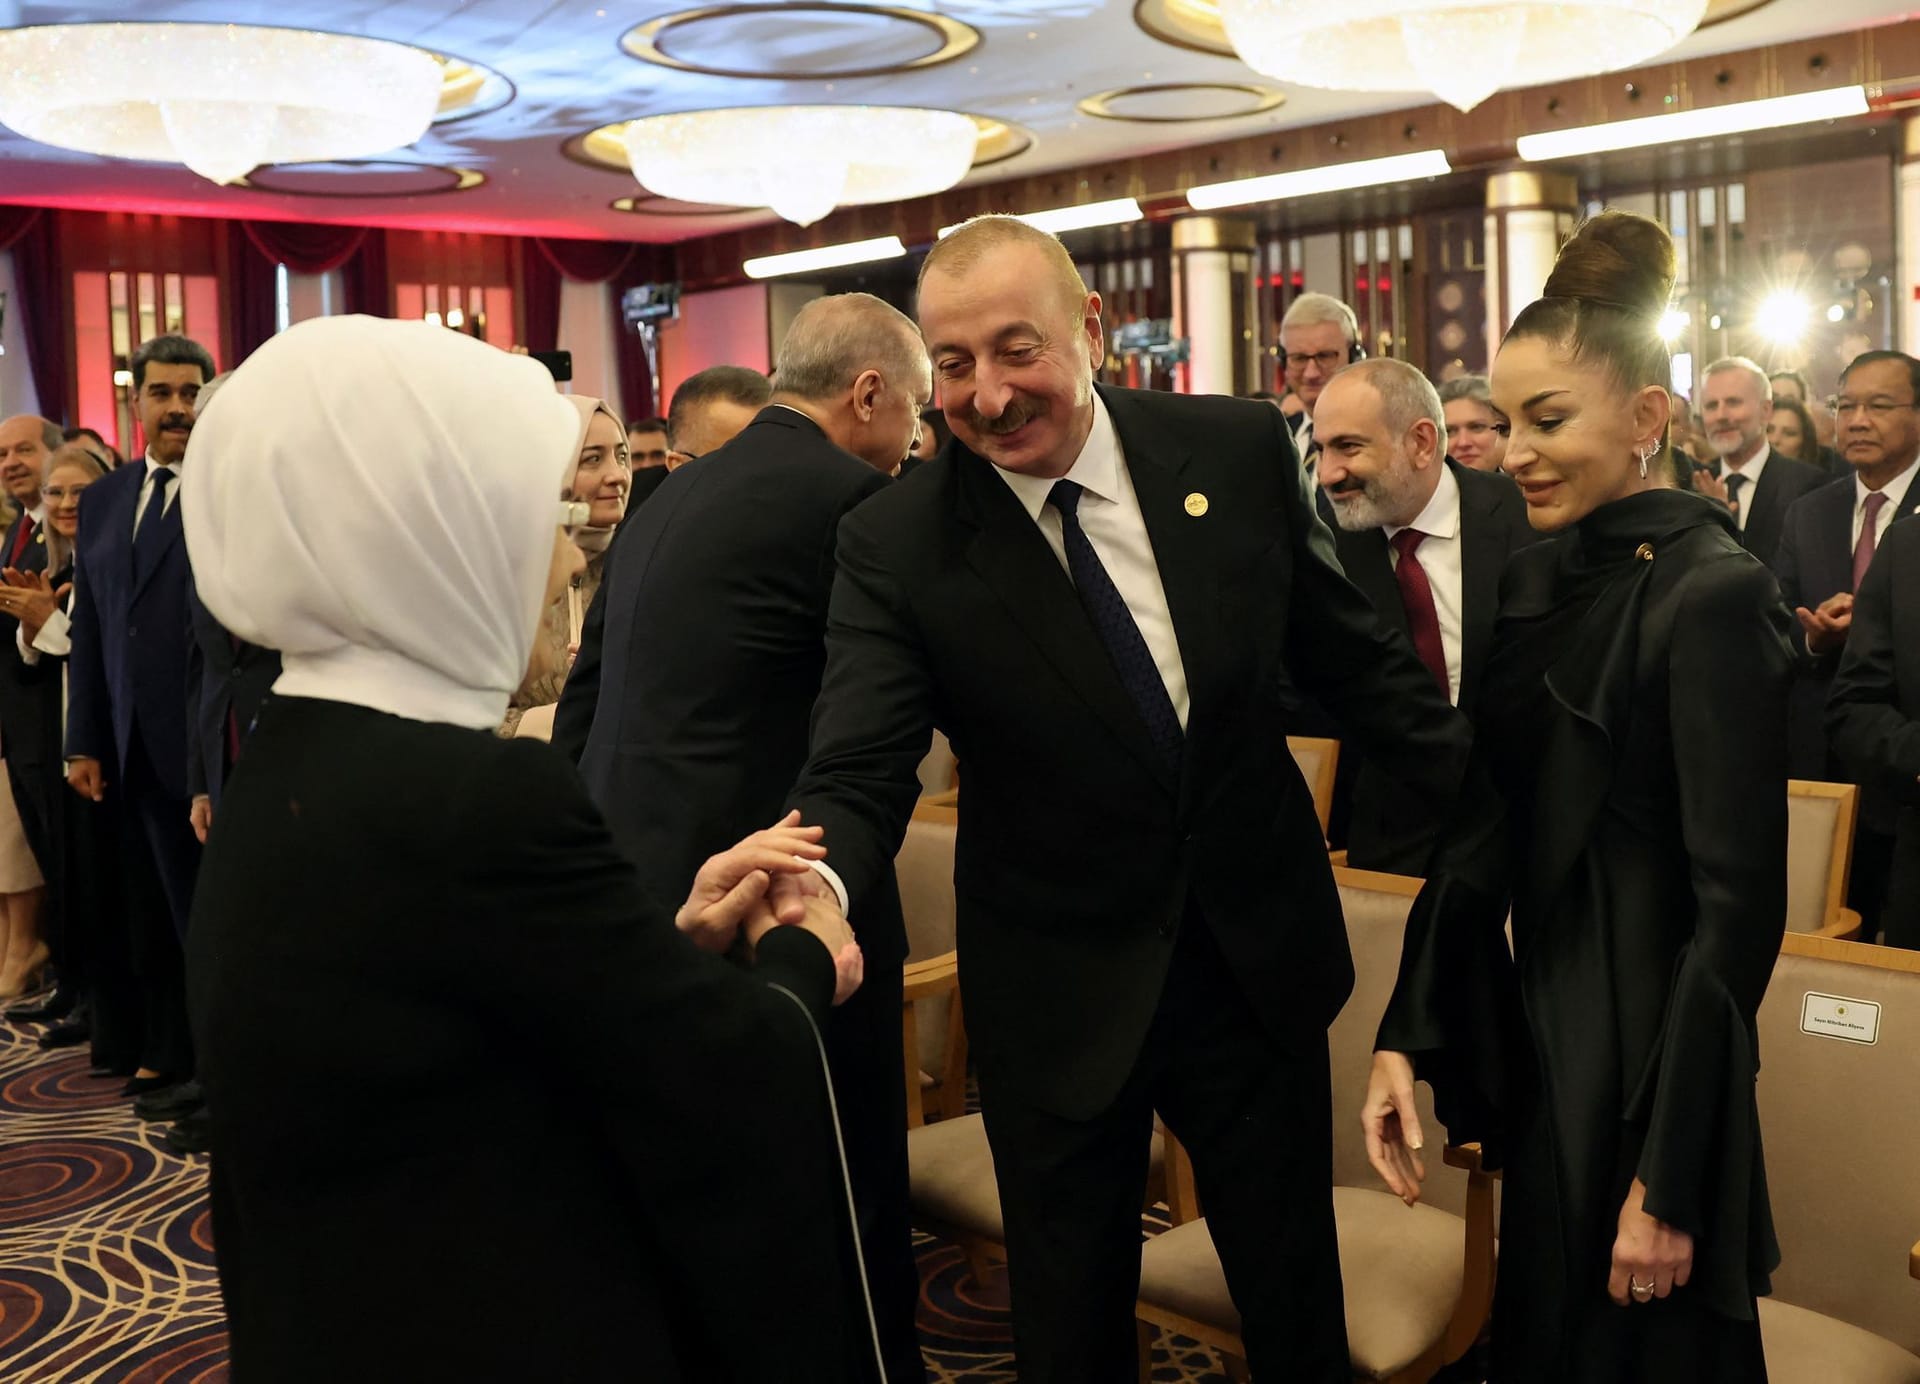 Szene von der Vereidigungszeremonie Erdoğan: An Teppich, Stühlen und Deckenbeleuchtung ist gut zu erkennen, dass die Schröders ebendort waren.